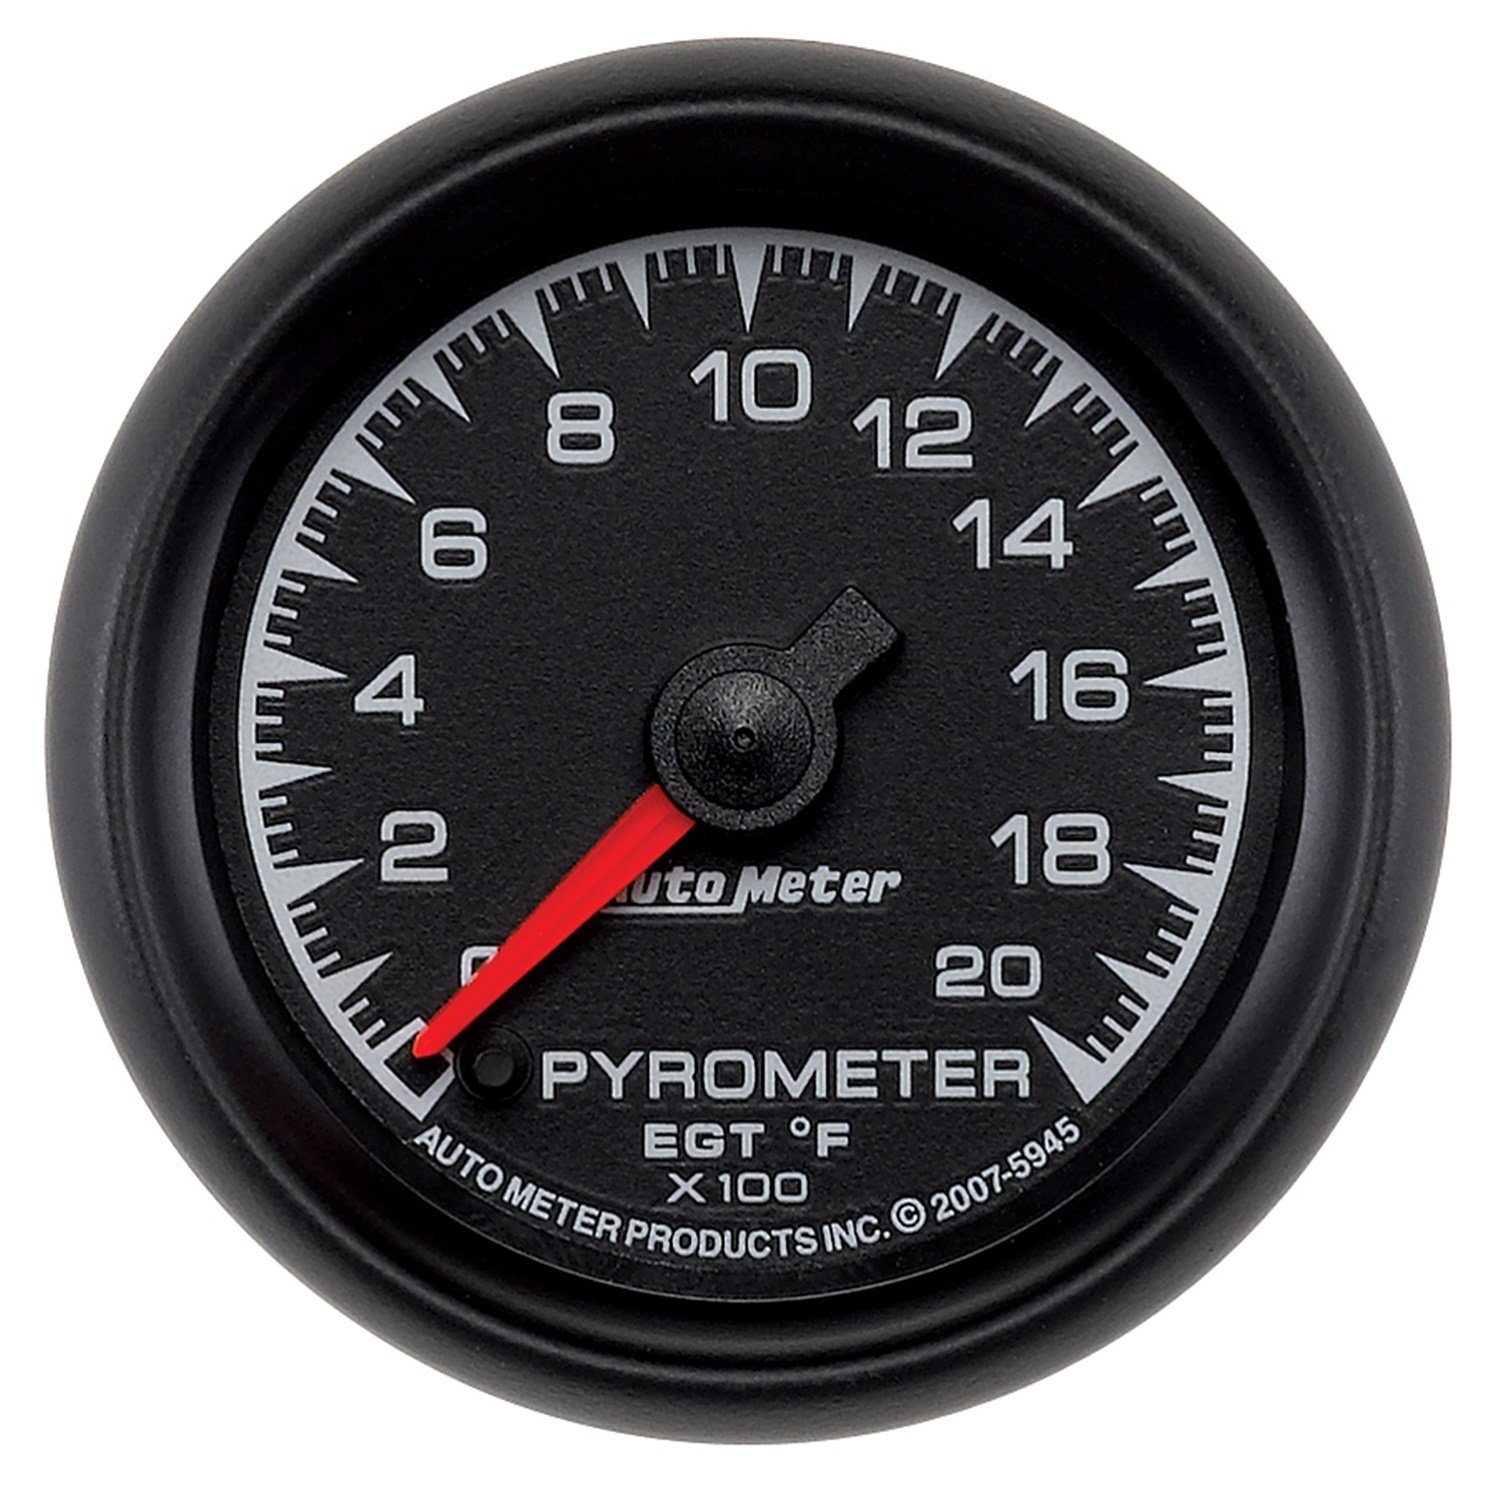 ES Series Pyrometer 2-1/16", Electrical